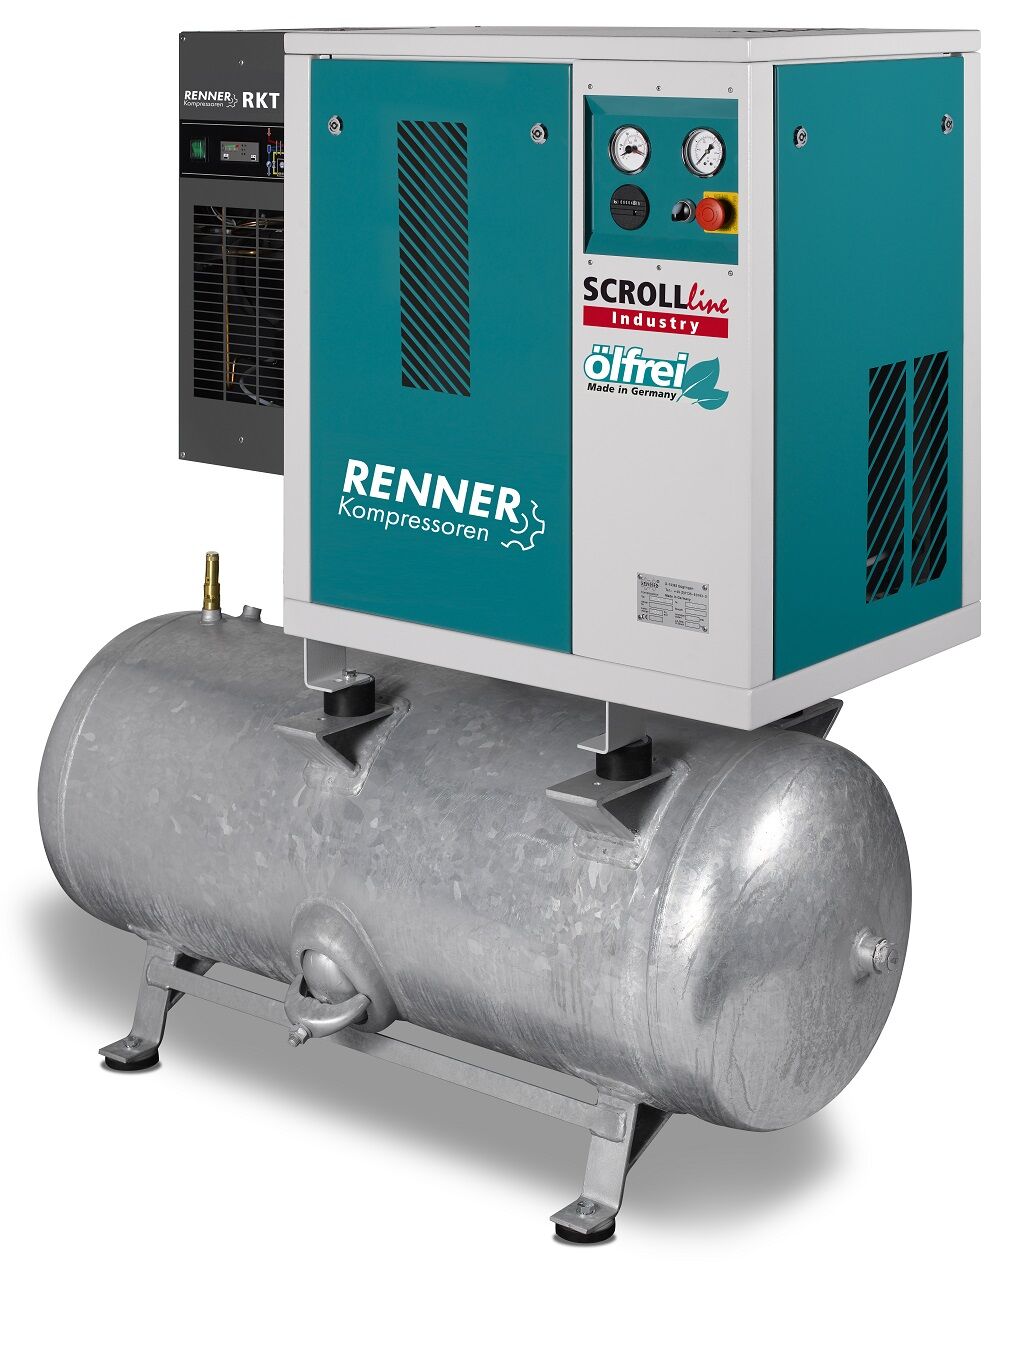 RENNER-Scrollkompr. Industry ölfrei - SLDK-I 5,5 auf 250 Liter Druckbehälter mit Kältetrockner